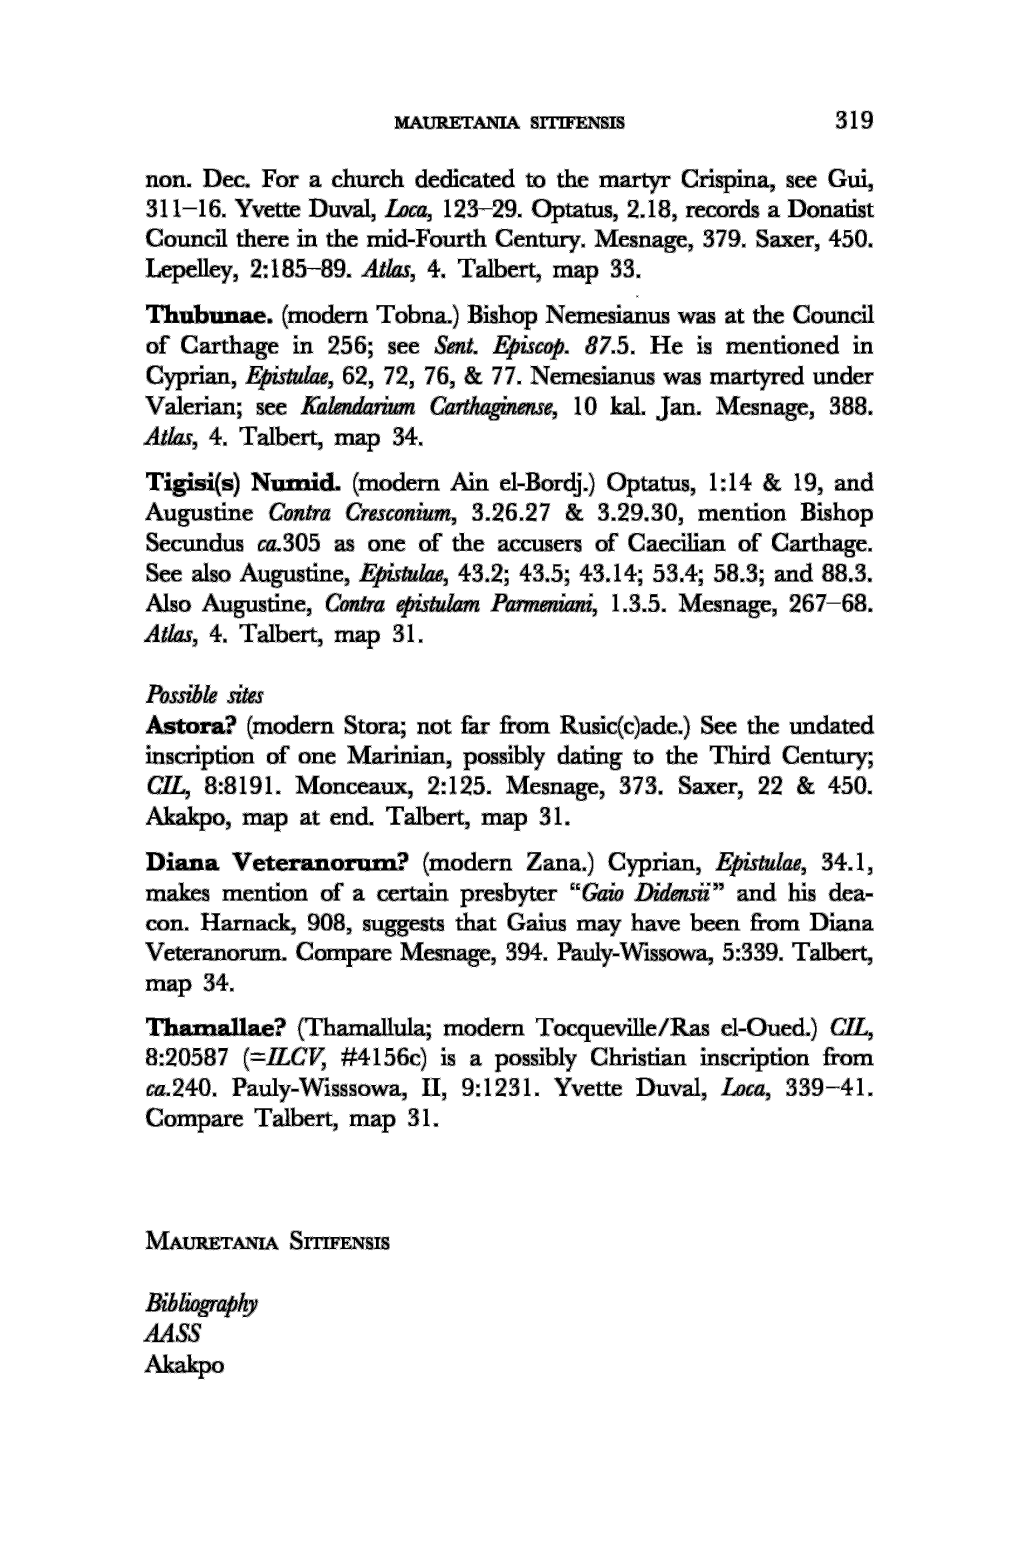 Va1erian; See Kalendarium Carthaginense, 10 Kai